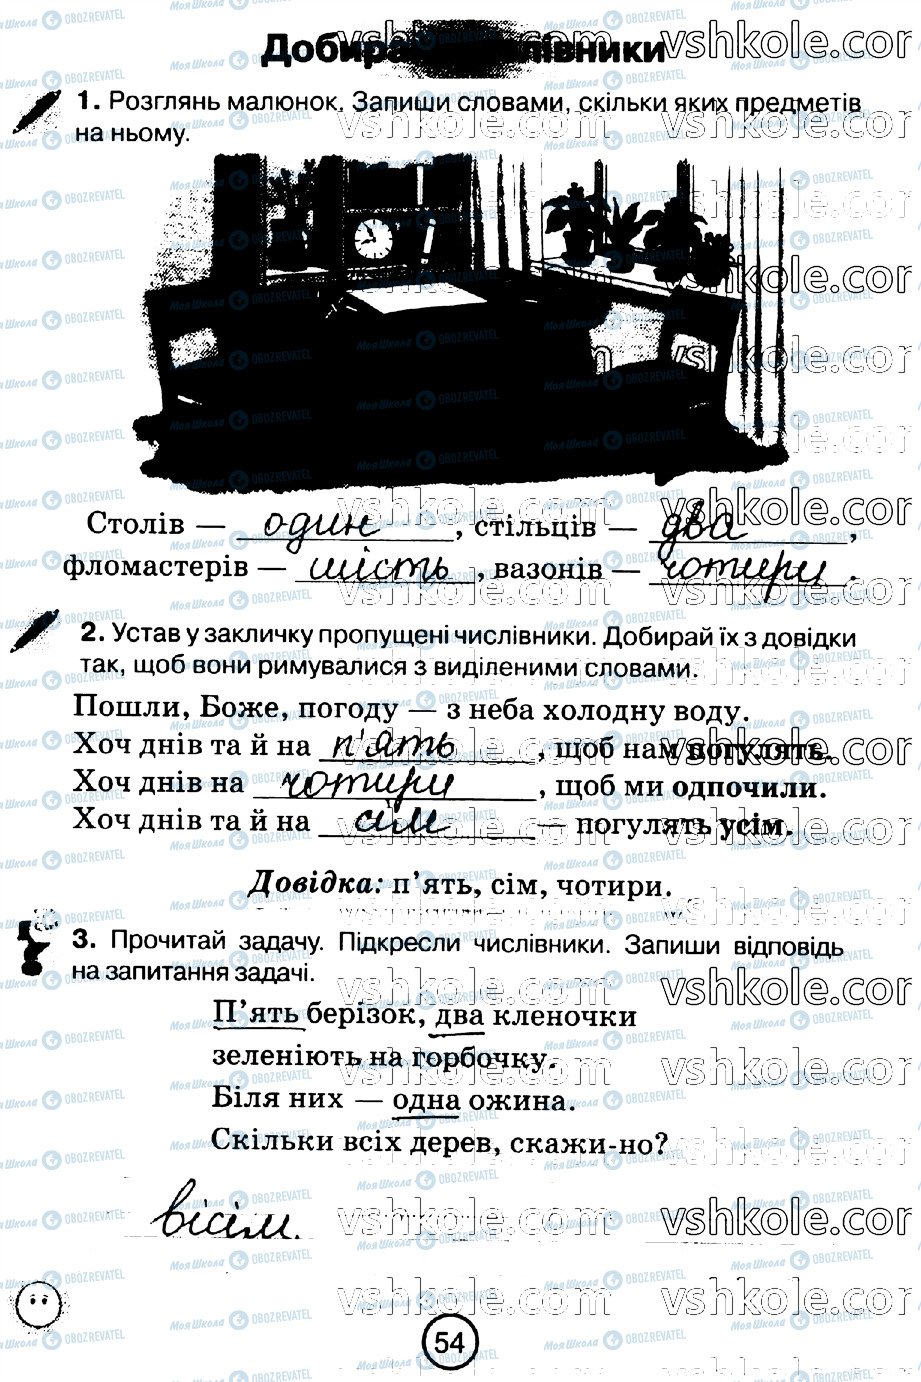 ГДЗ Укр мова 2 класс страница стр54